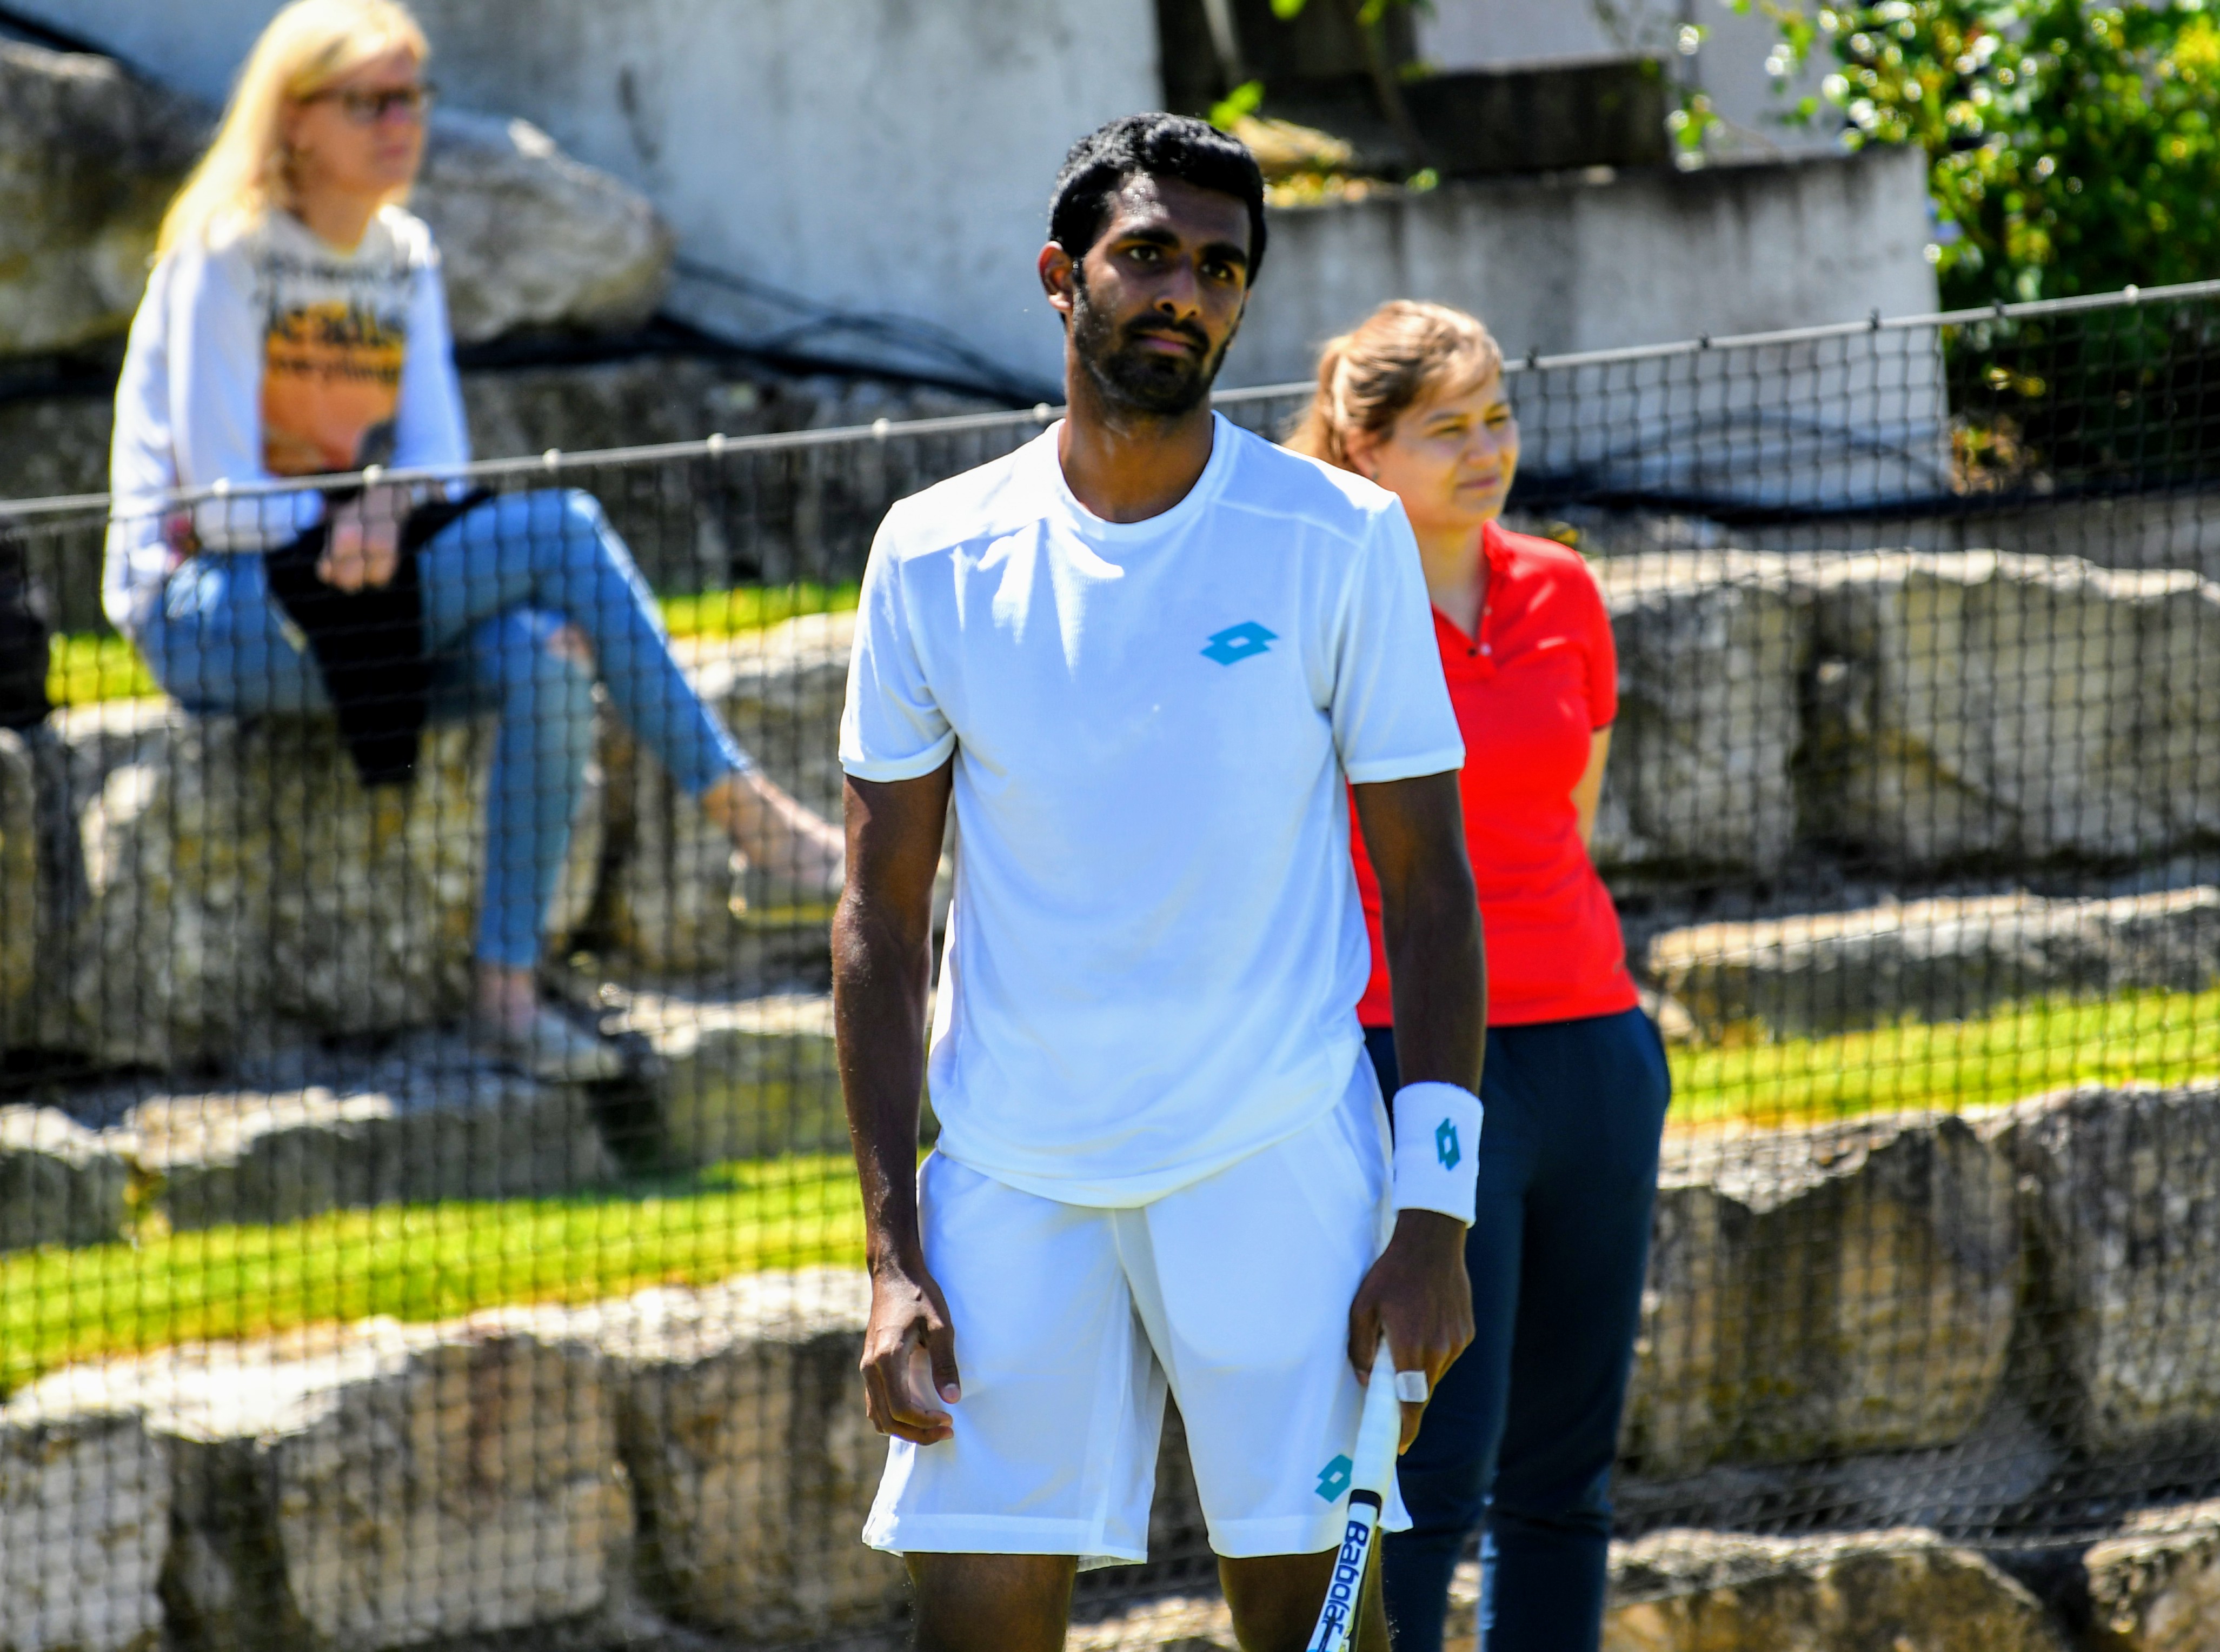 Photos from Prajnesh Gunneswaran’s match in ATP Stuttgart